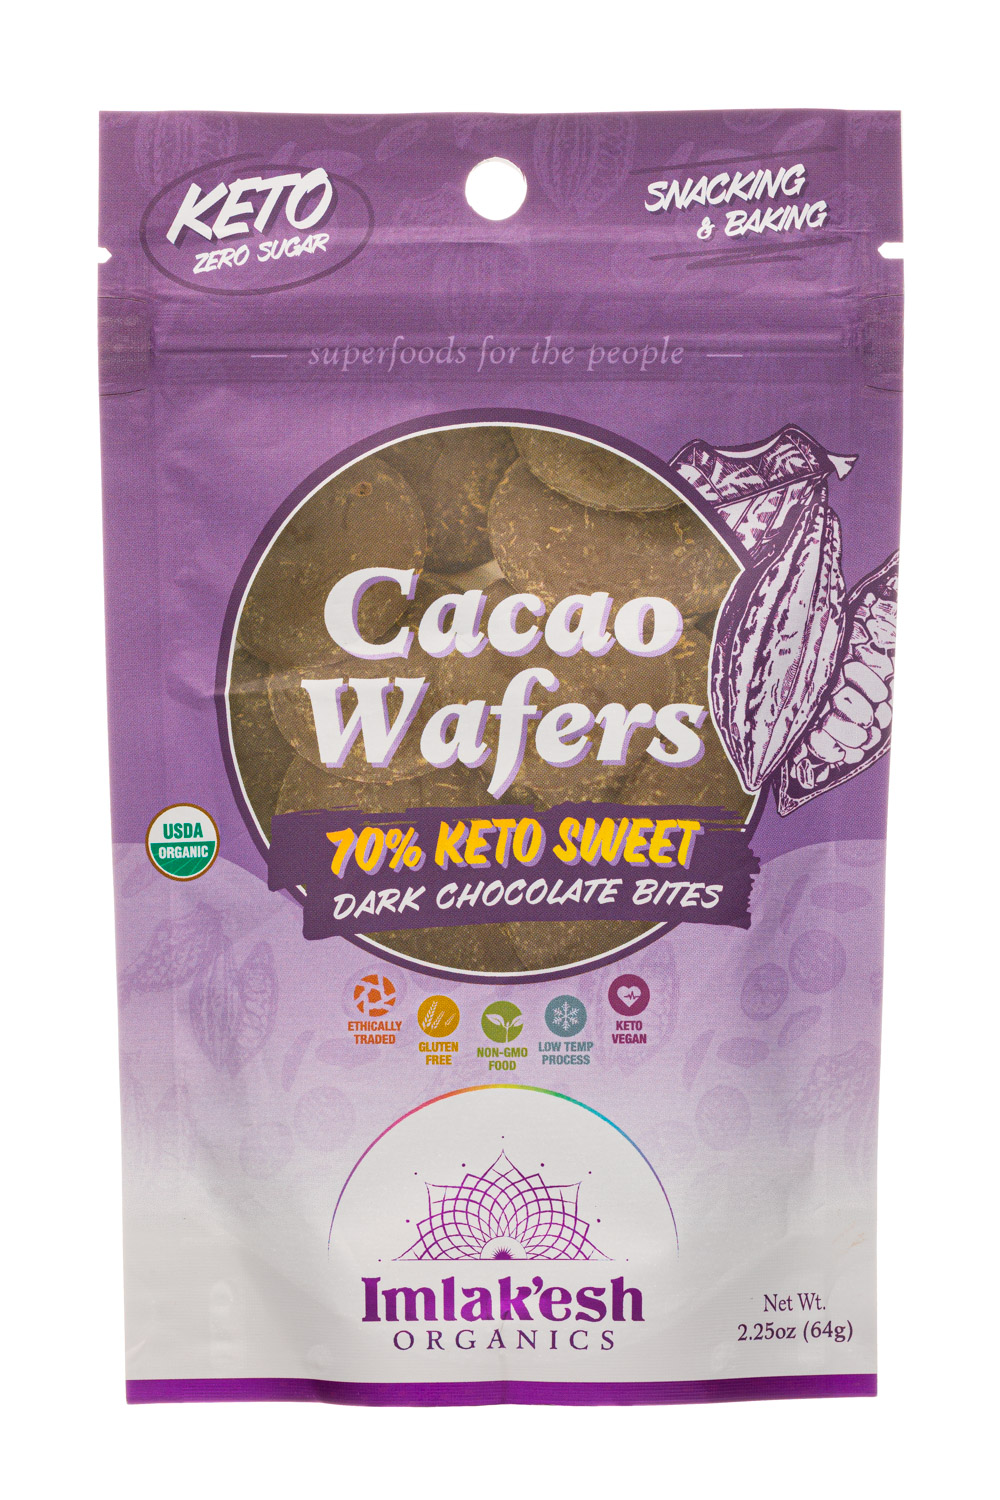 Cacao Wafers - 70% Keto Sweet